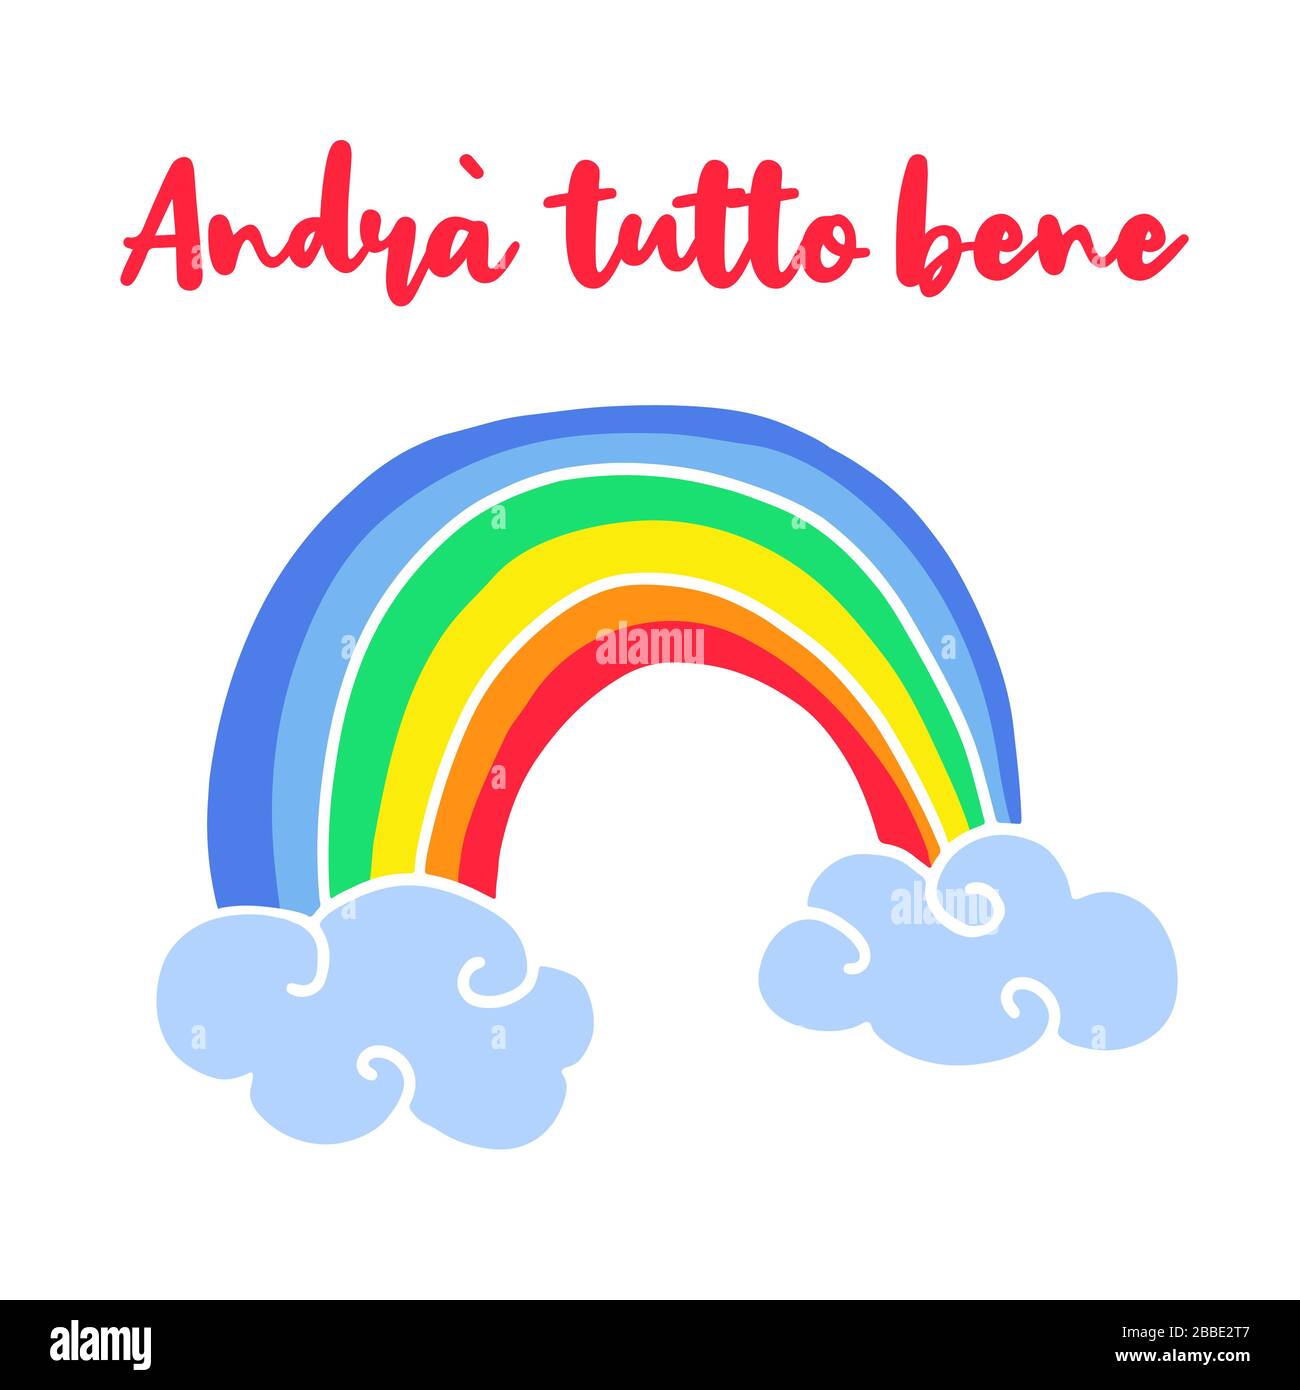 Alles wird in italienischer Sprache geschrieben - Andra tutto bene. Einfaches Symbol für Regenbogen und Wolken. Hope Symbol bei Coronavirus Pandemie. Vektorgrafiken. Stock Vektor